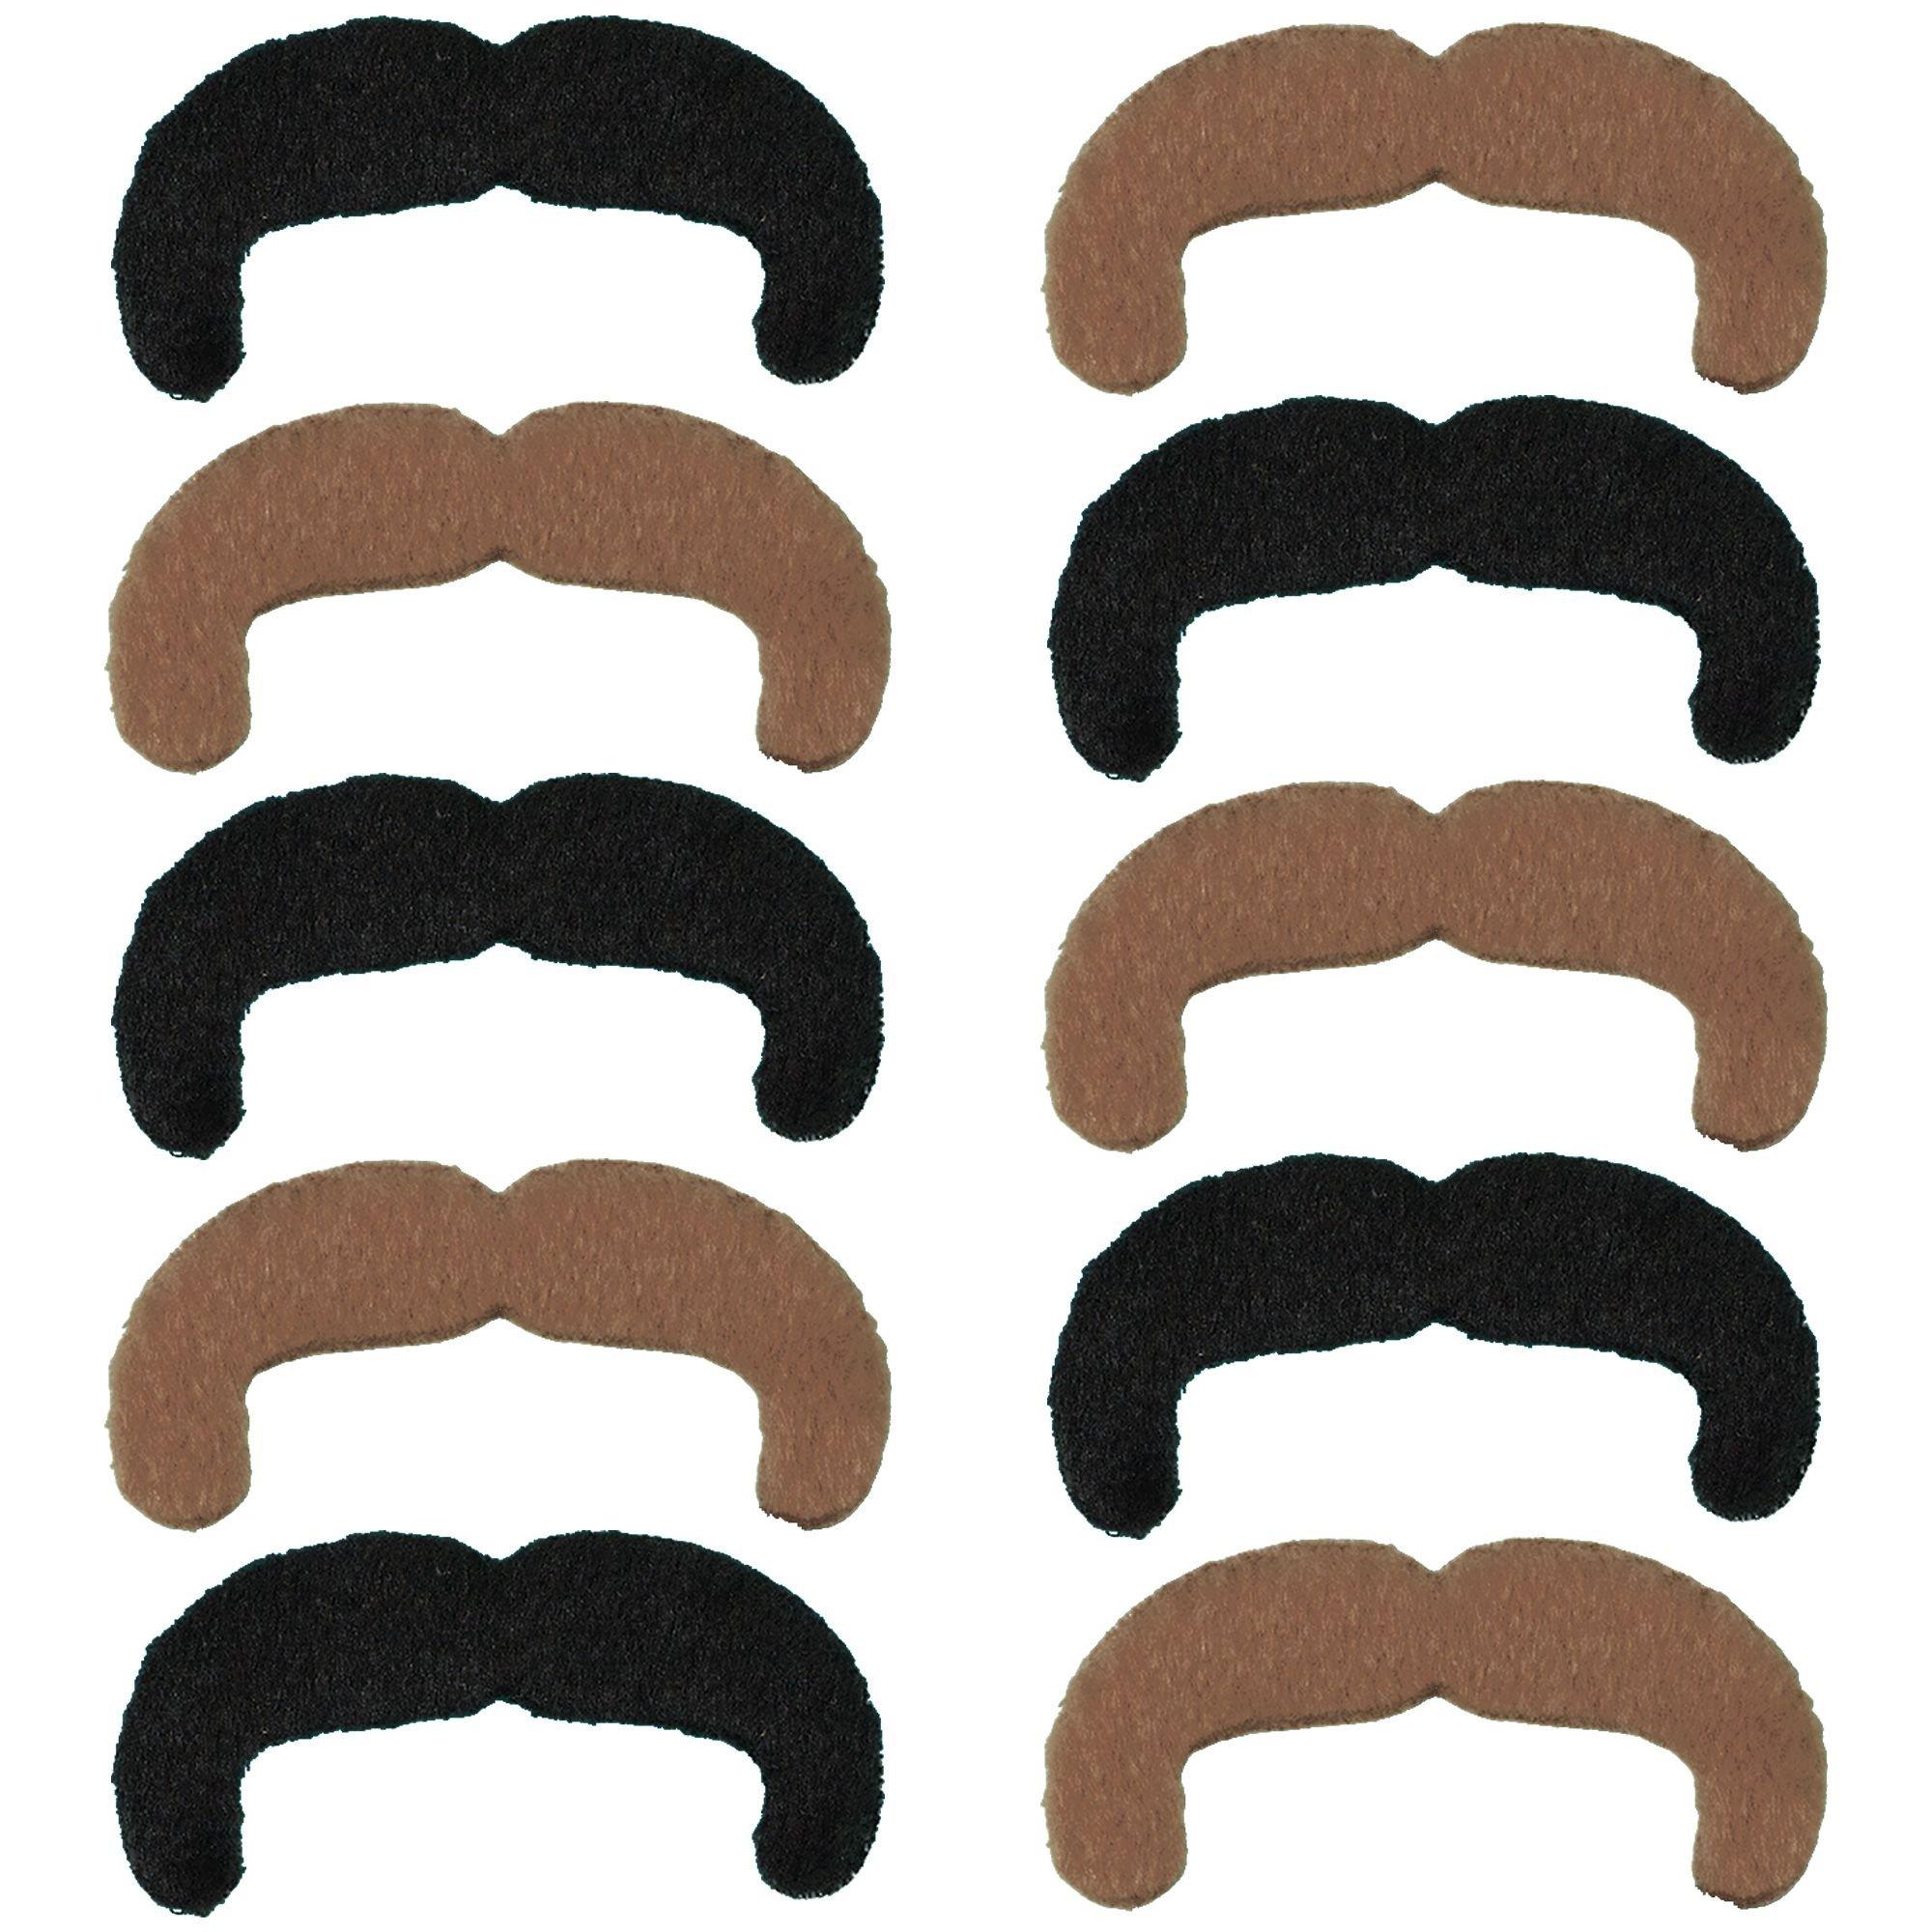 Black & Blond 70s Moustaches 10ct | Party City